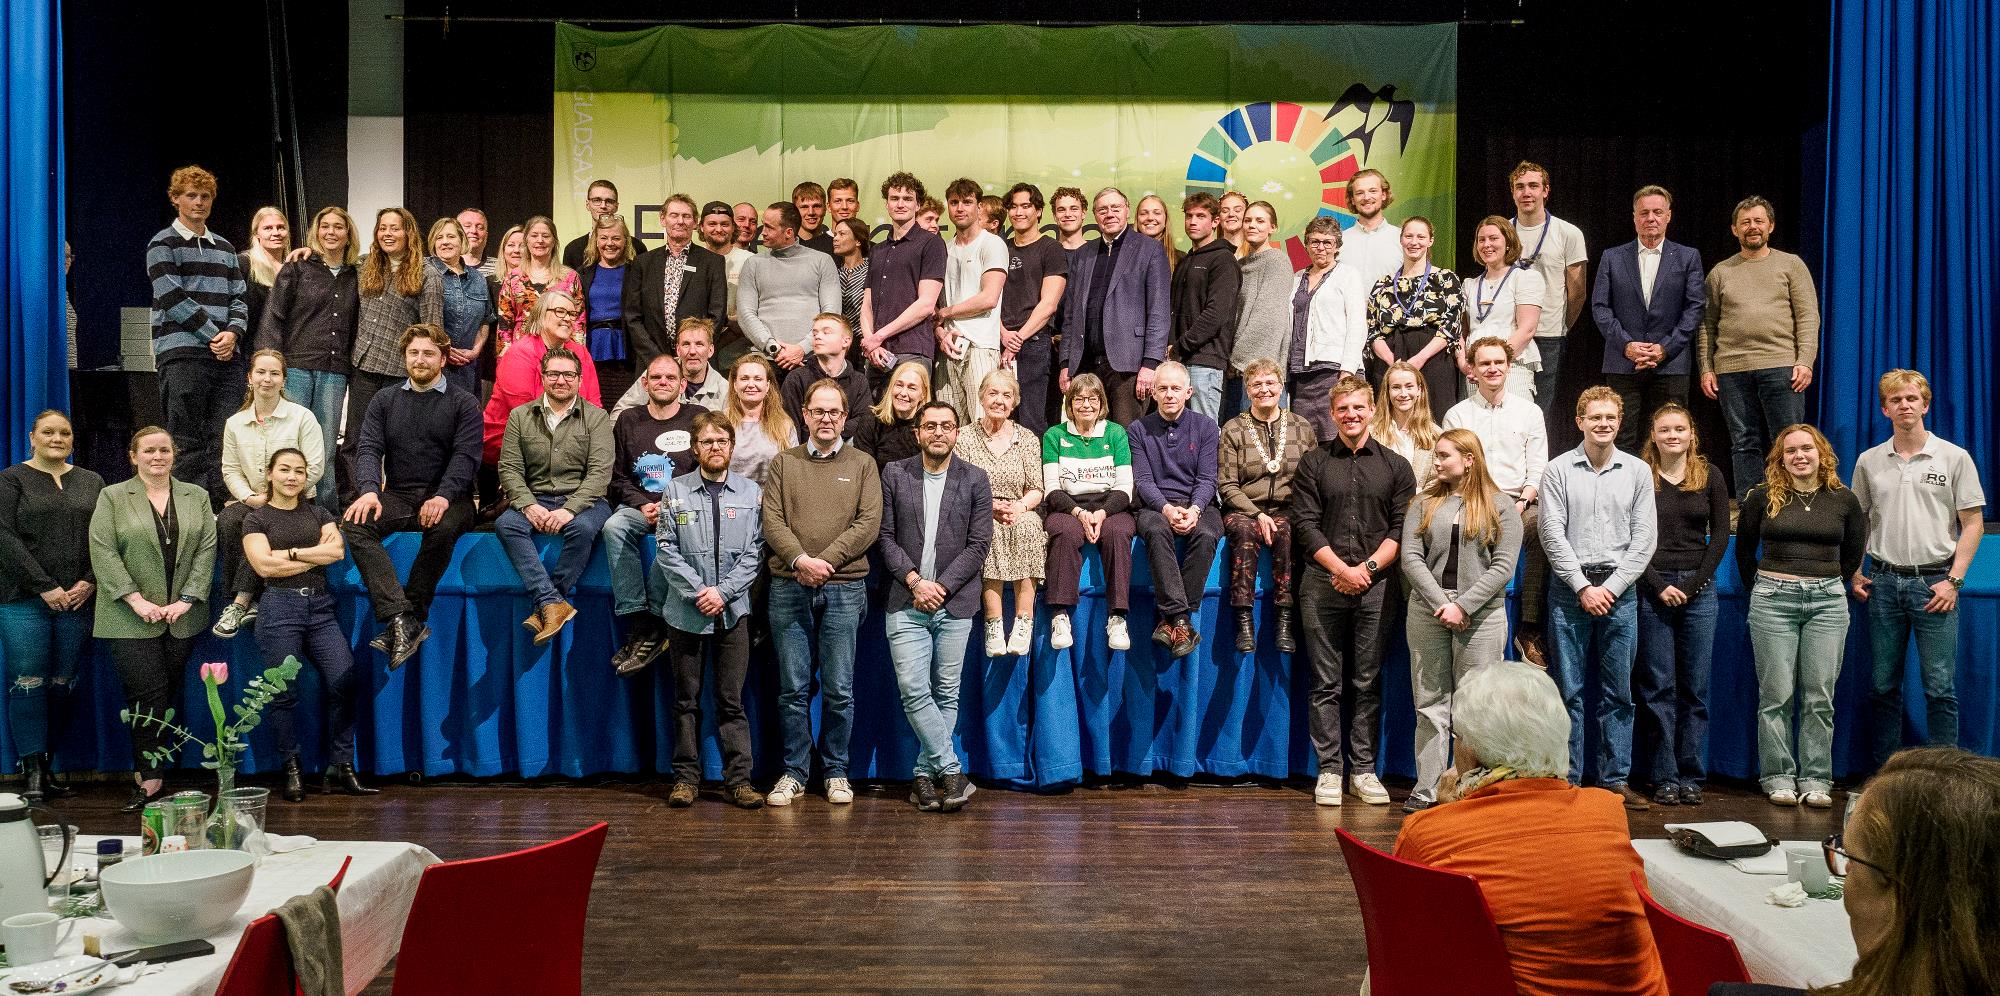 Fællesbillede med aftenens deltagere, prismodtagere og repræsentanter fra Gladsaxe Byråd